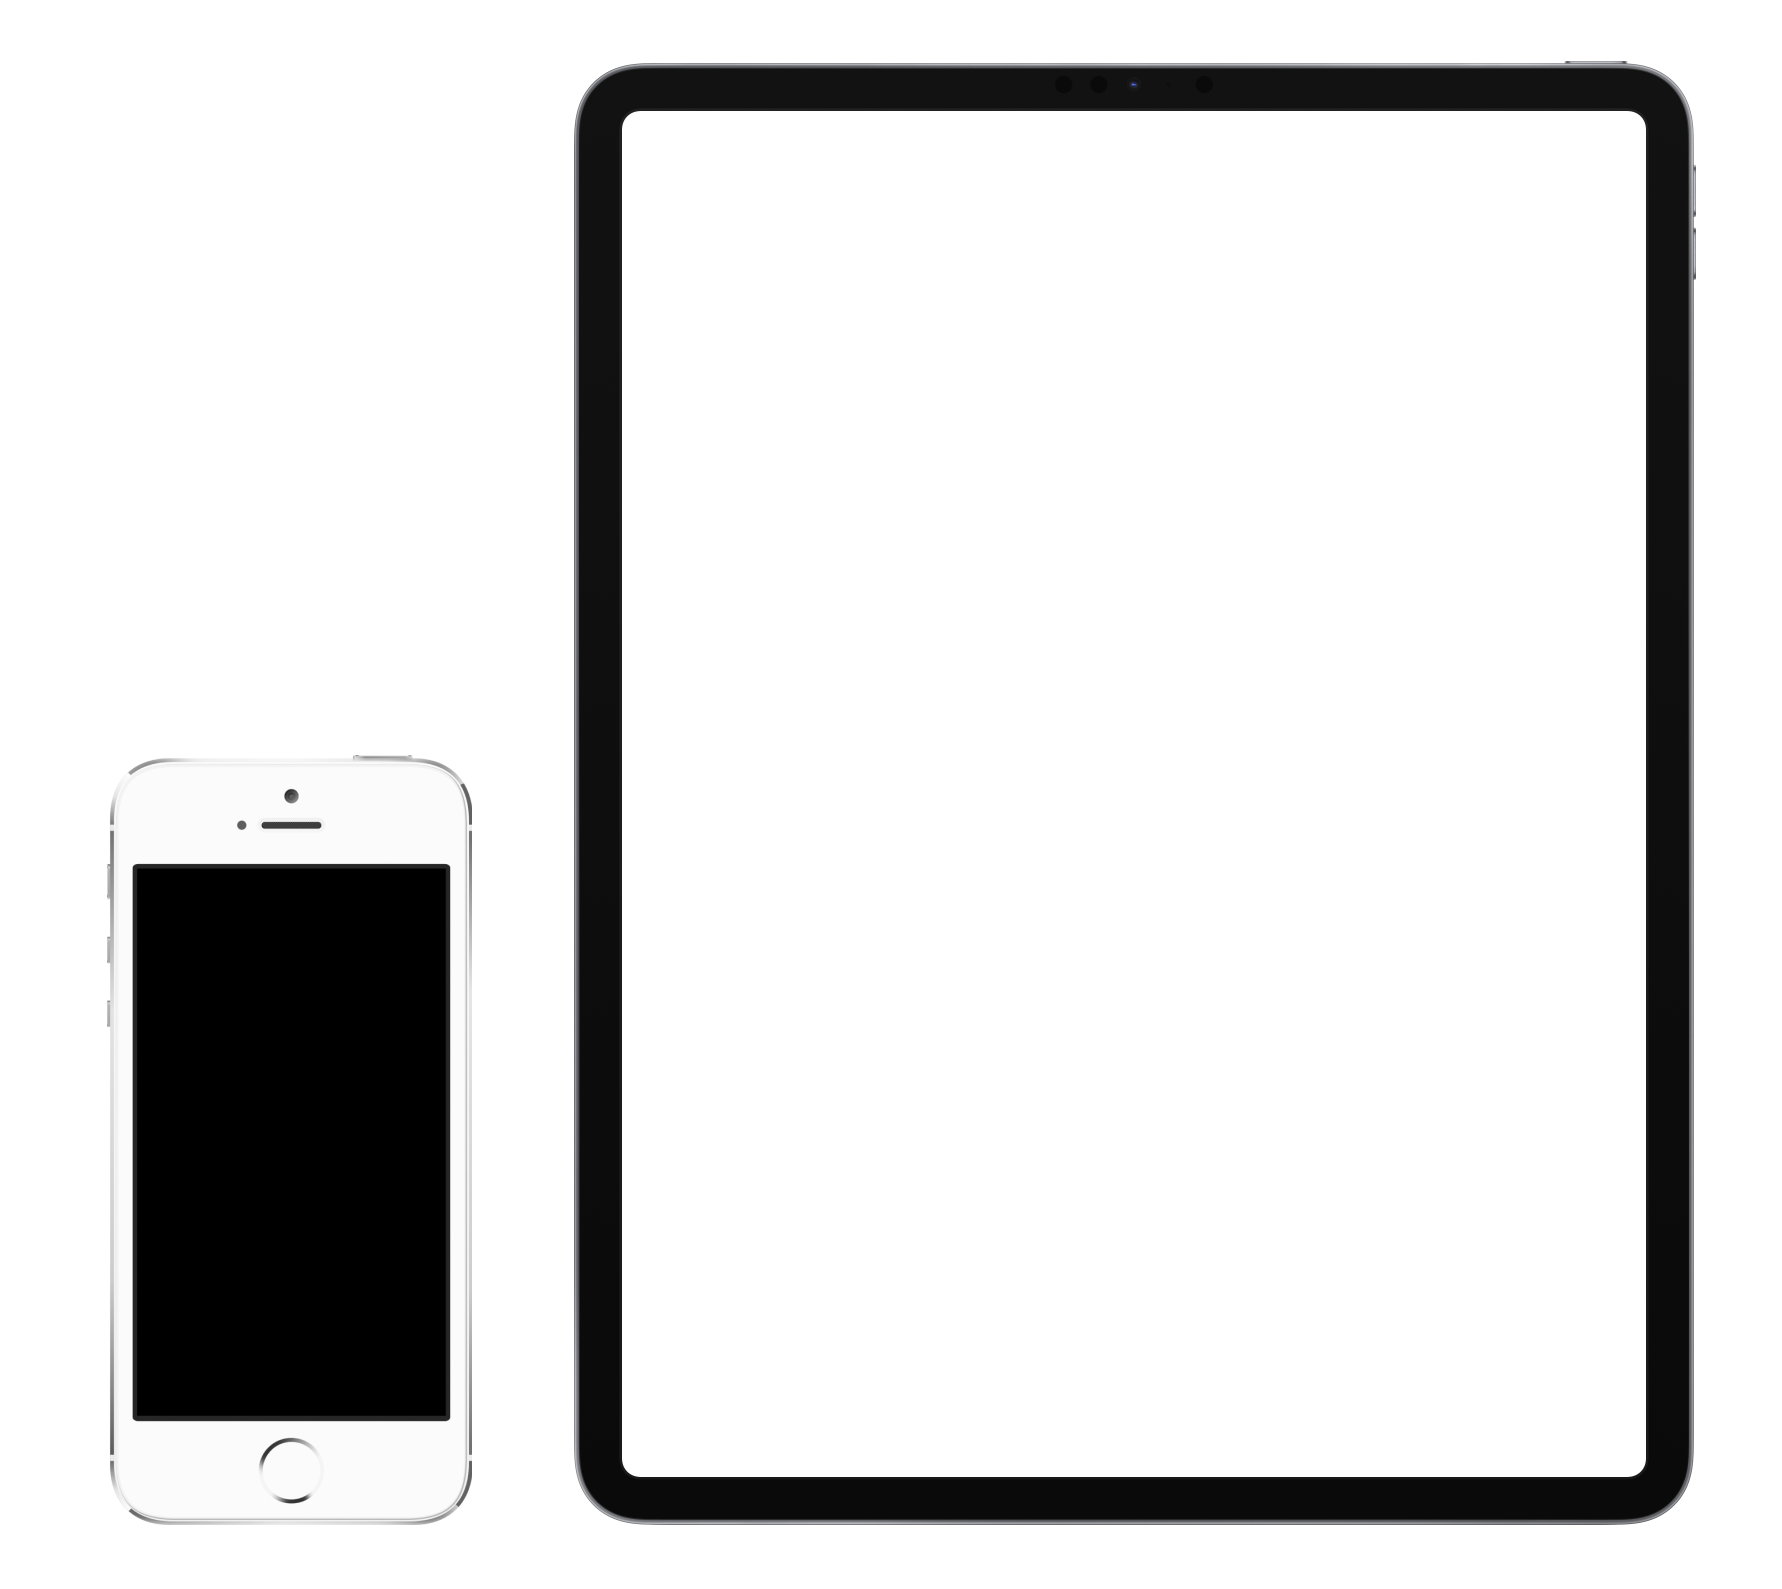 iPhone SE 1st gen vs iPad Pro 12.9 size comparition